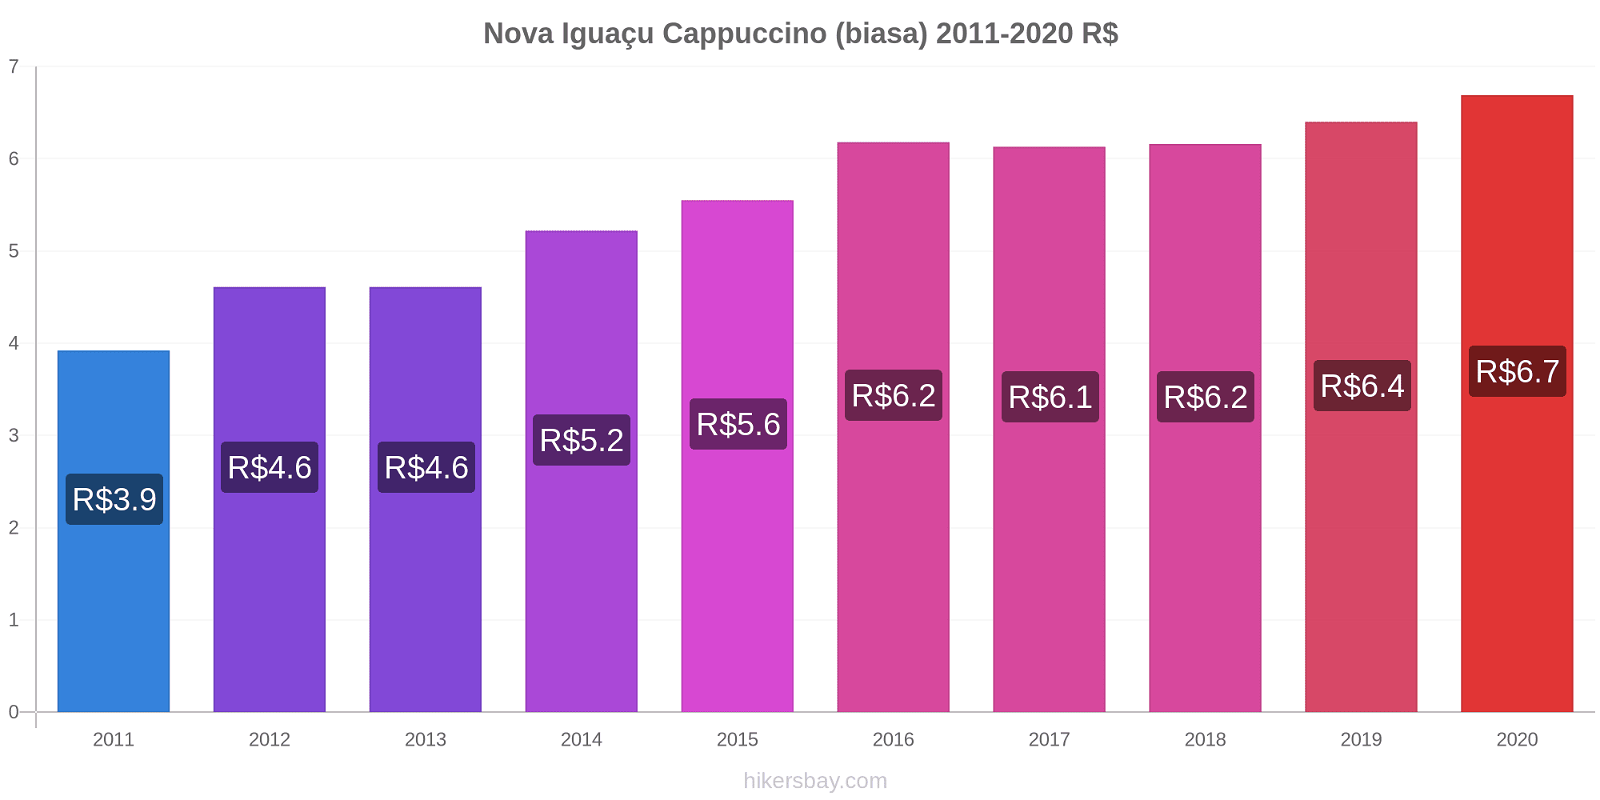 Nova Iguaçu perubahan harga Cappuccino (biasa) hikersbay.com